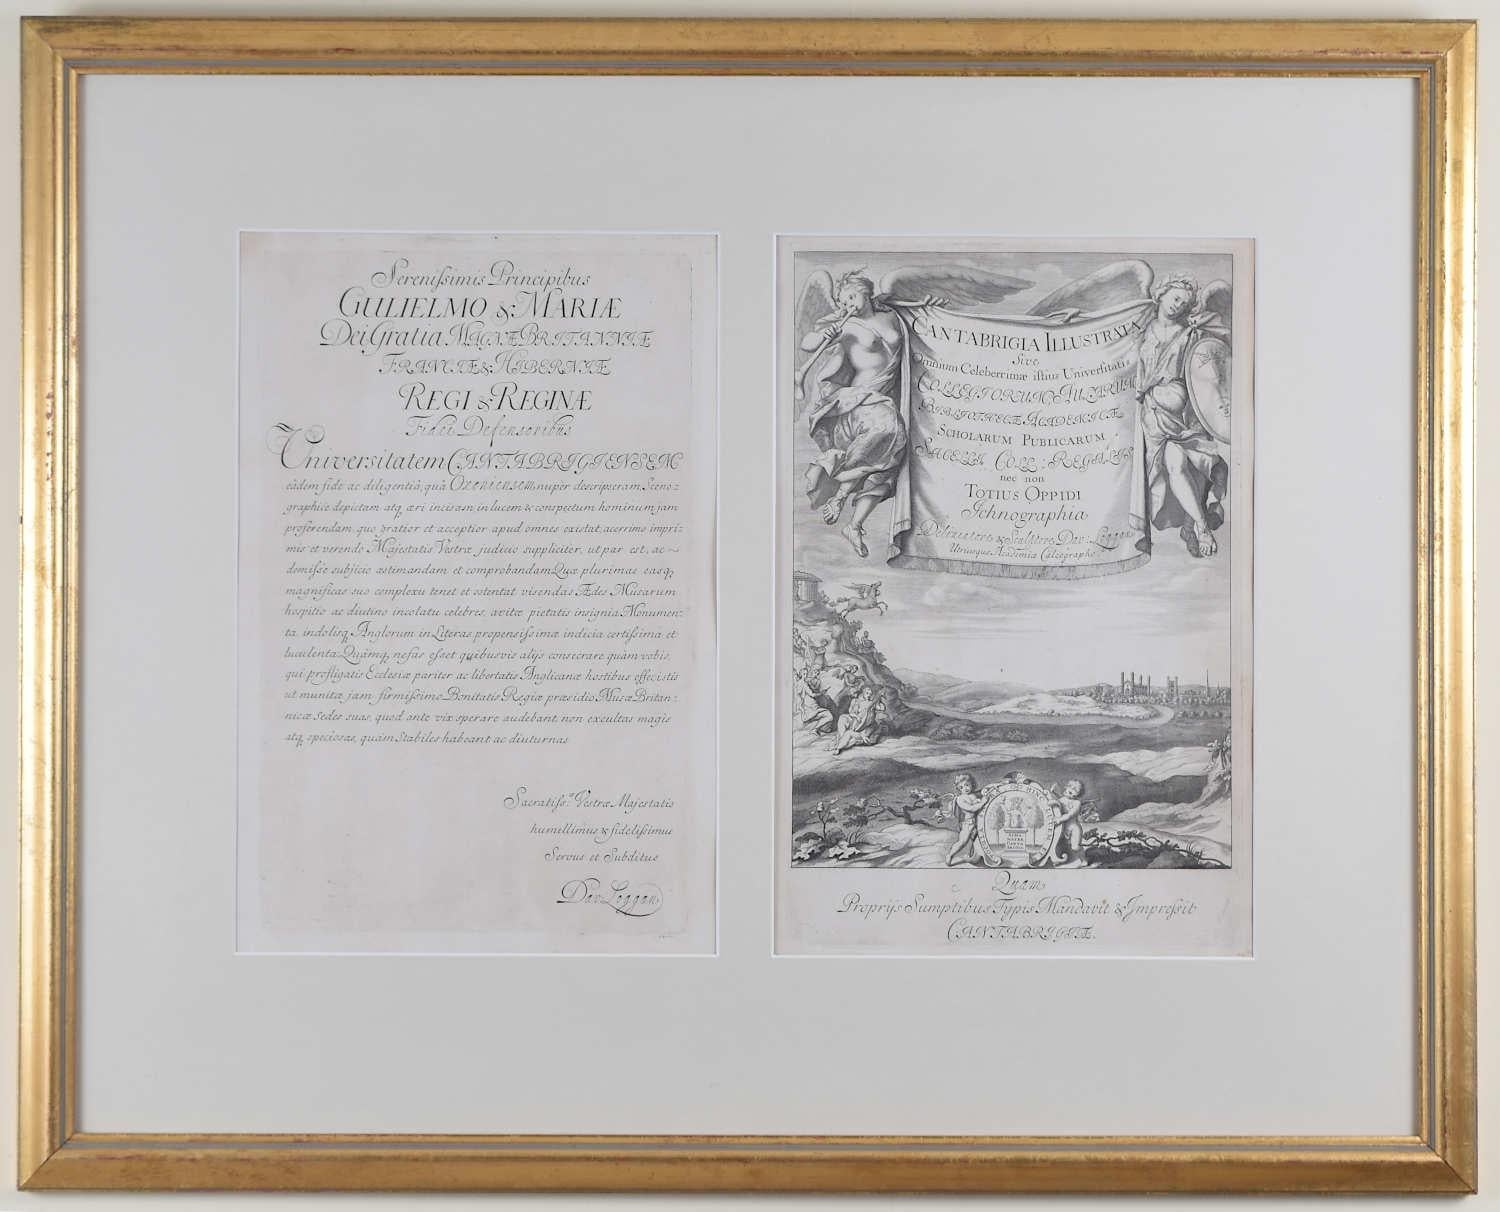 David Loggan : Gravure de l'Université de Cambridge 1690 – Chef-d'œuvre et dédication